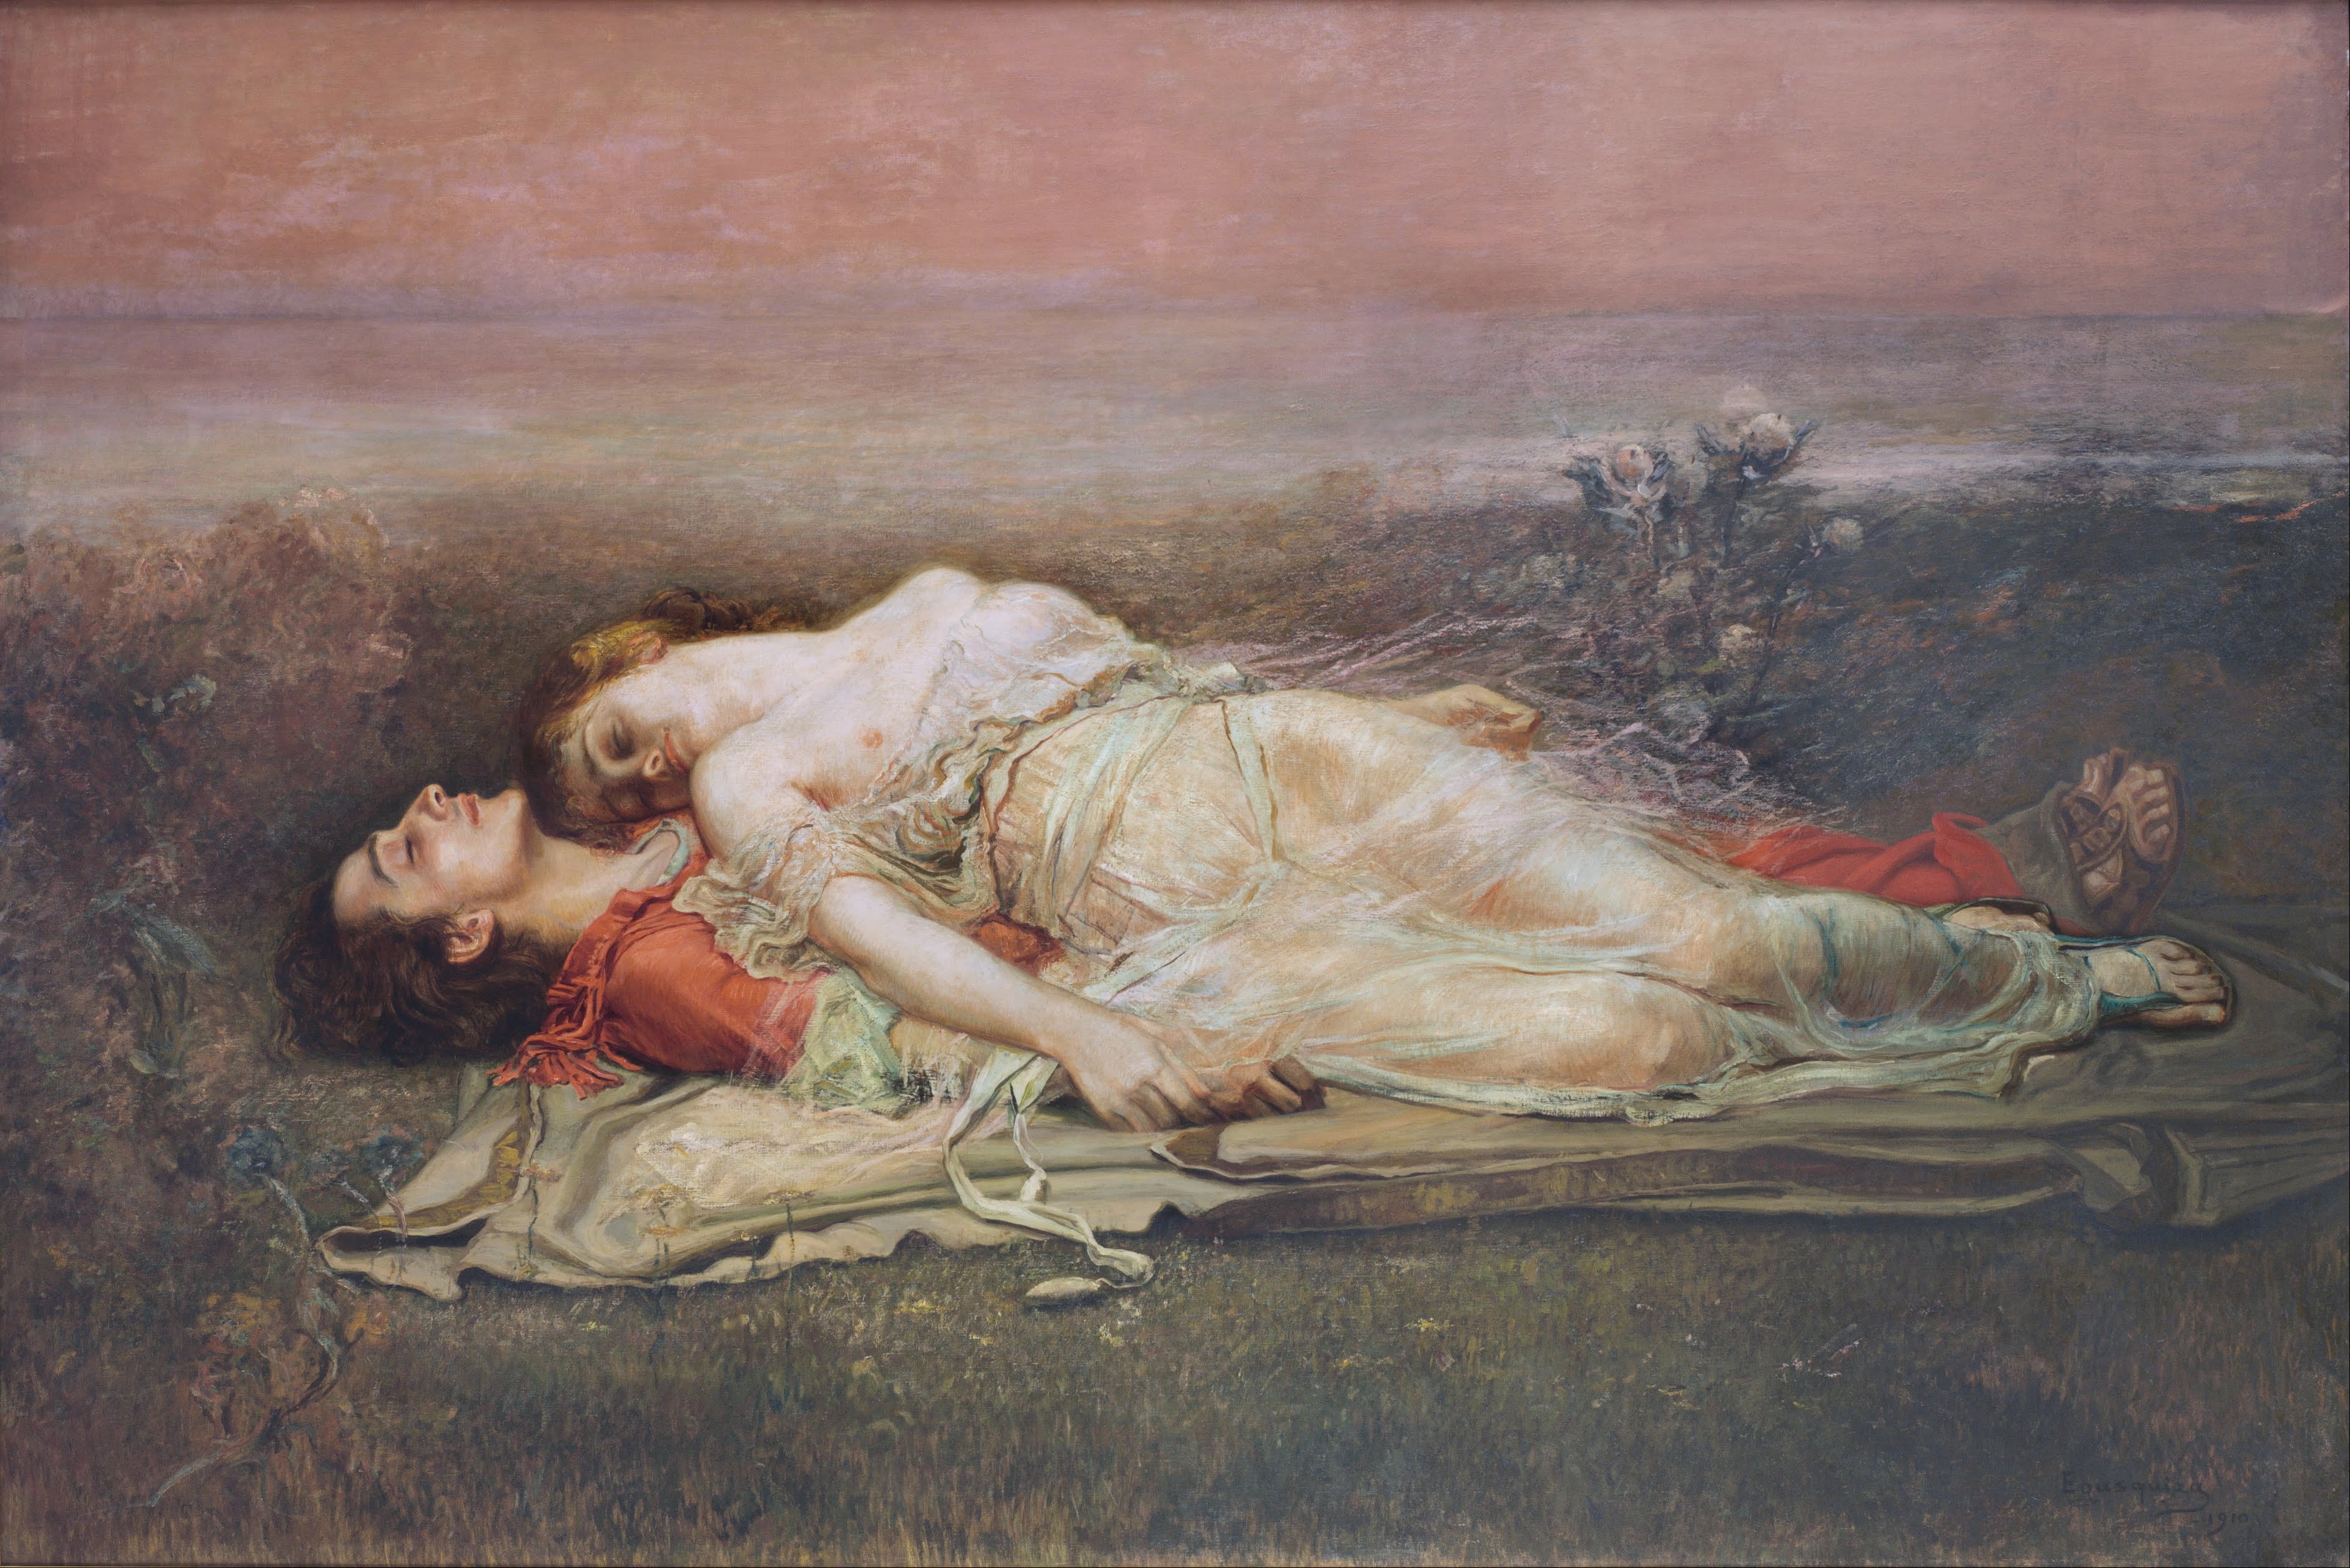 Tristanus et Isolda – Amor et Dissolutio